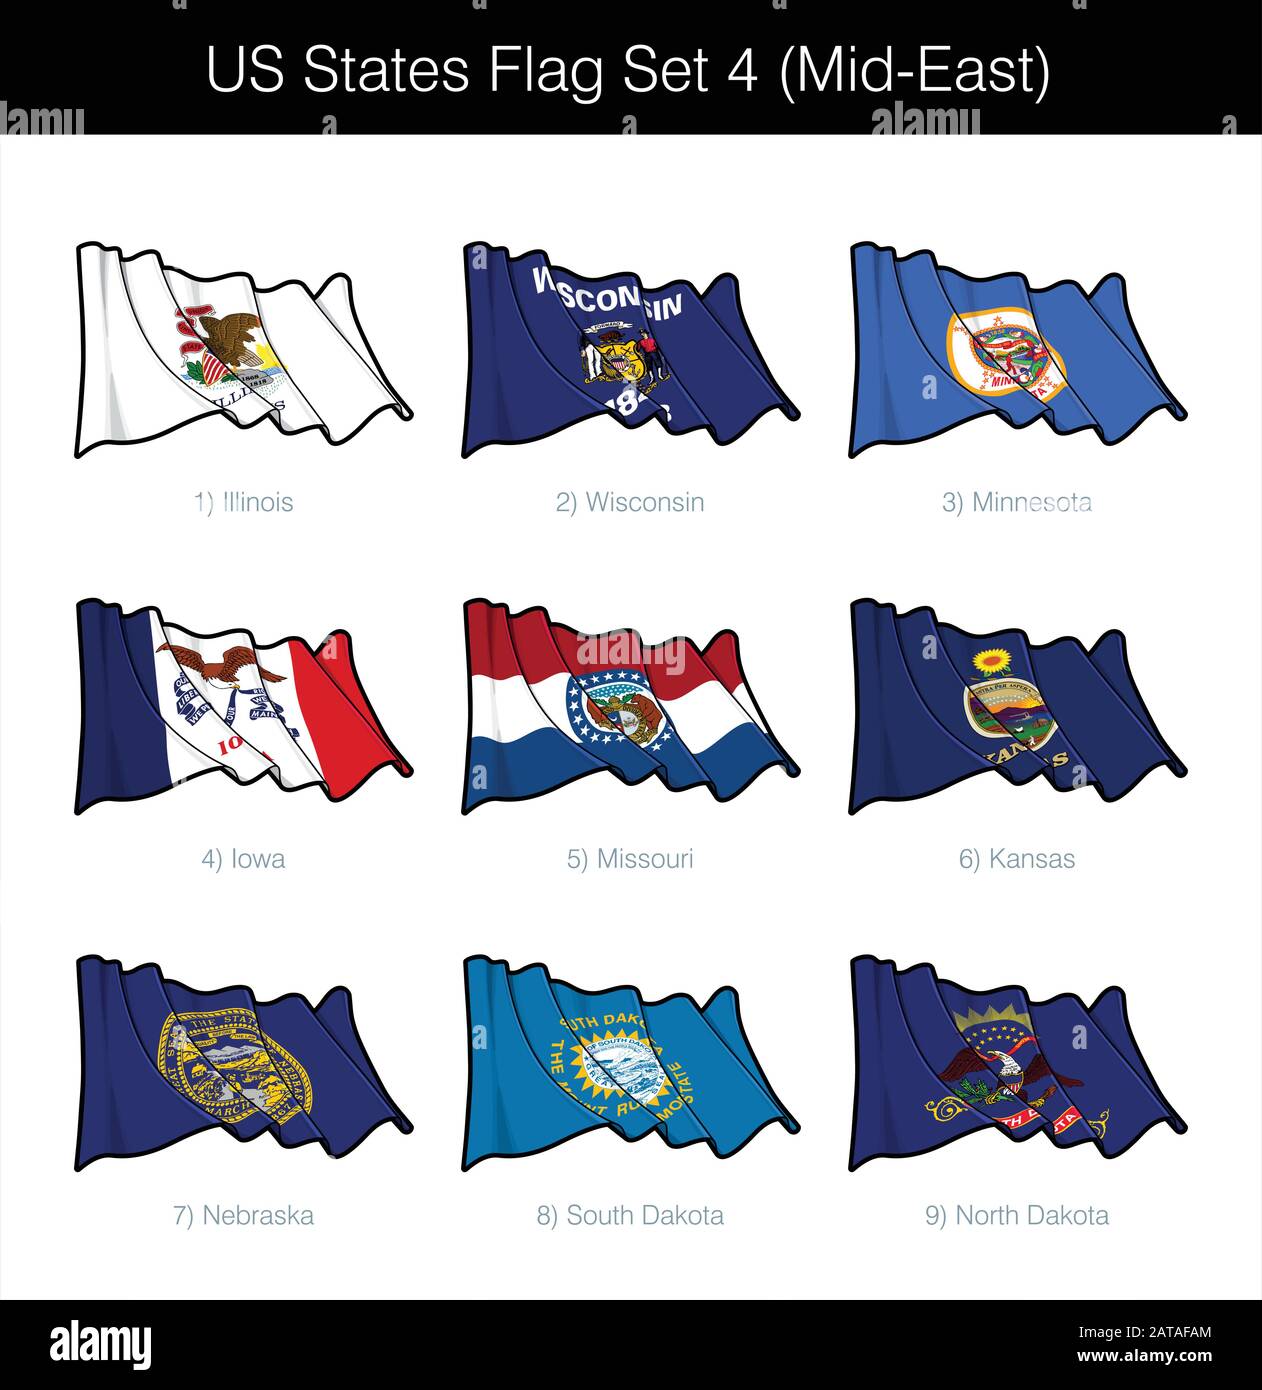 US Mid East States Flag Set. Das Set umfasst die schwenkenden Flaggen von Illinois, Wisconsin, Minnesota, Iowa, Missouri, Kansas, Nebraska, South n North Dako Stock Vektor